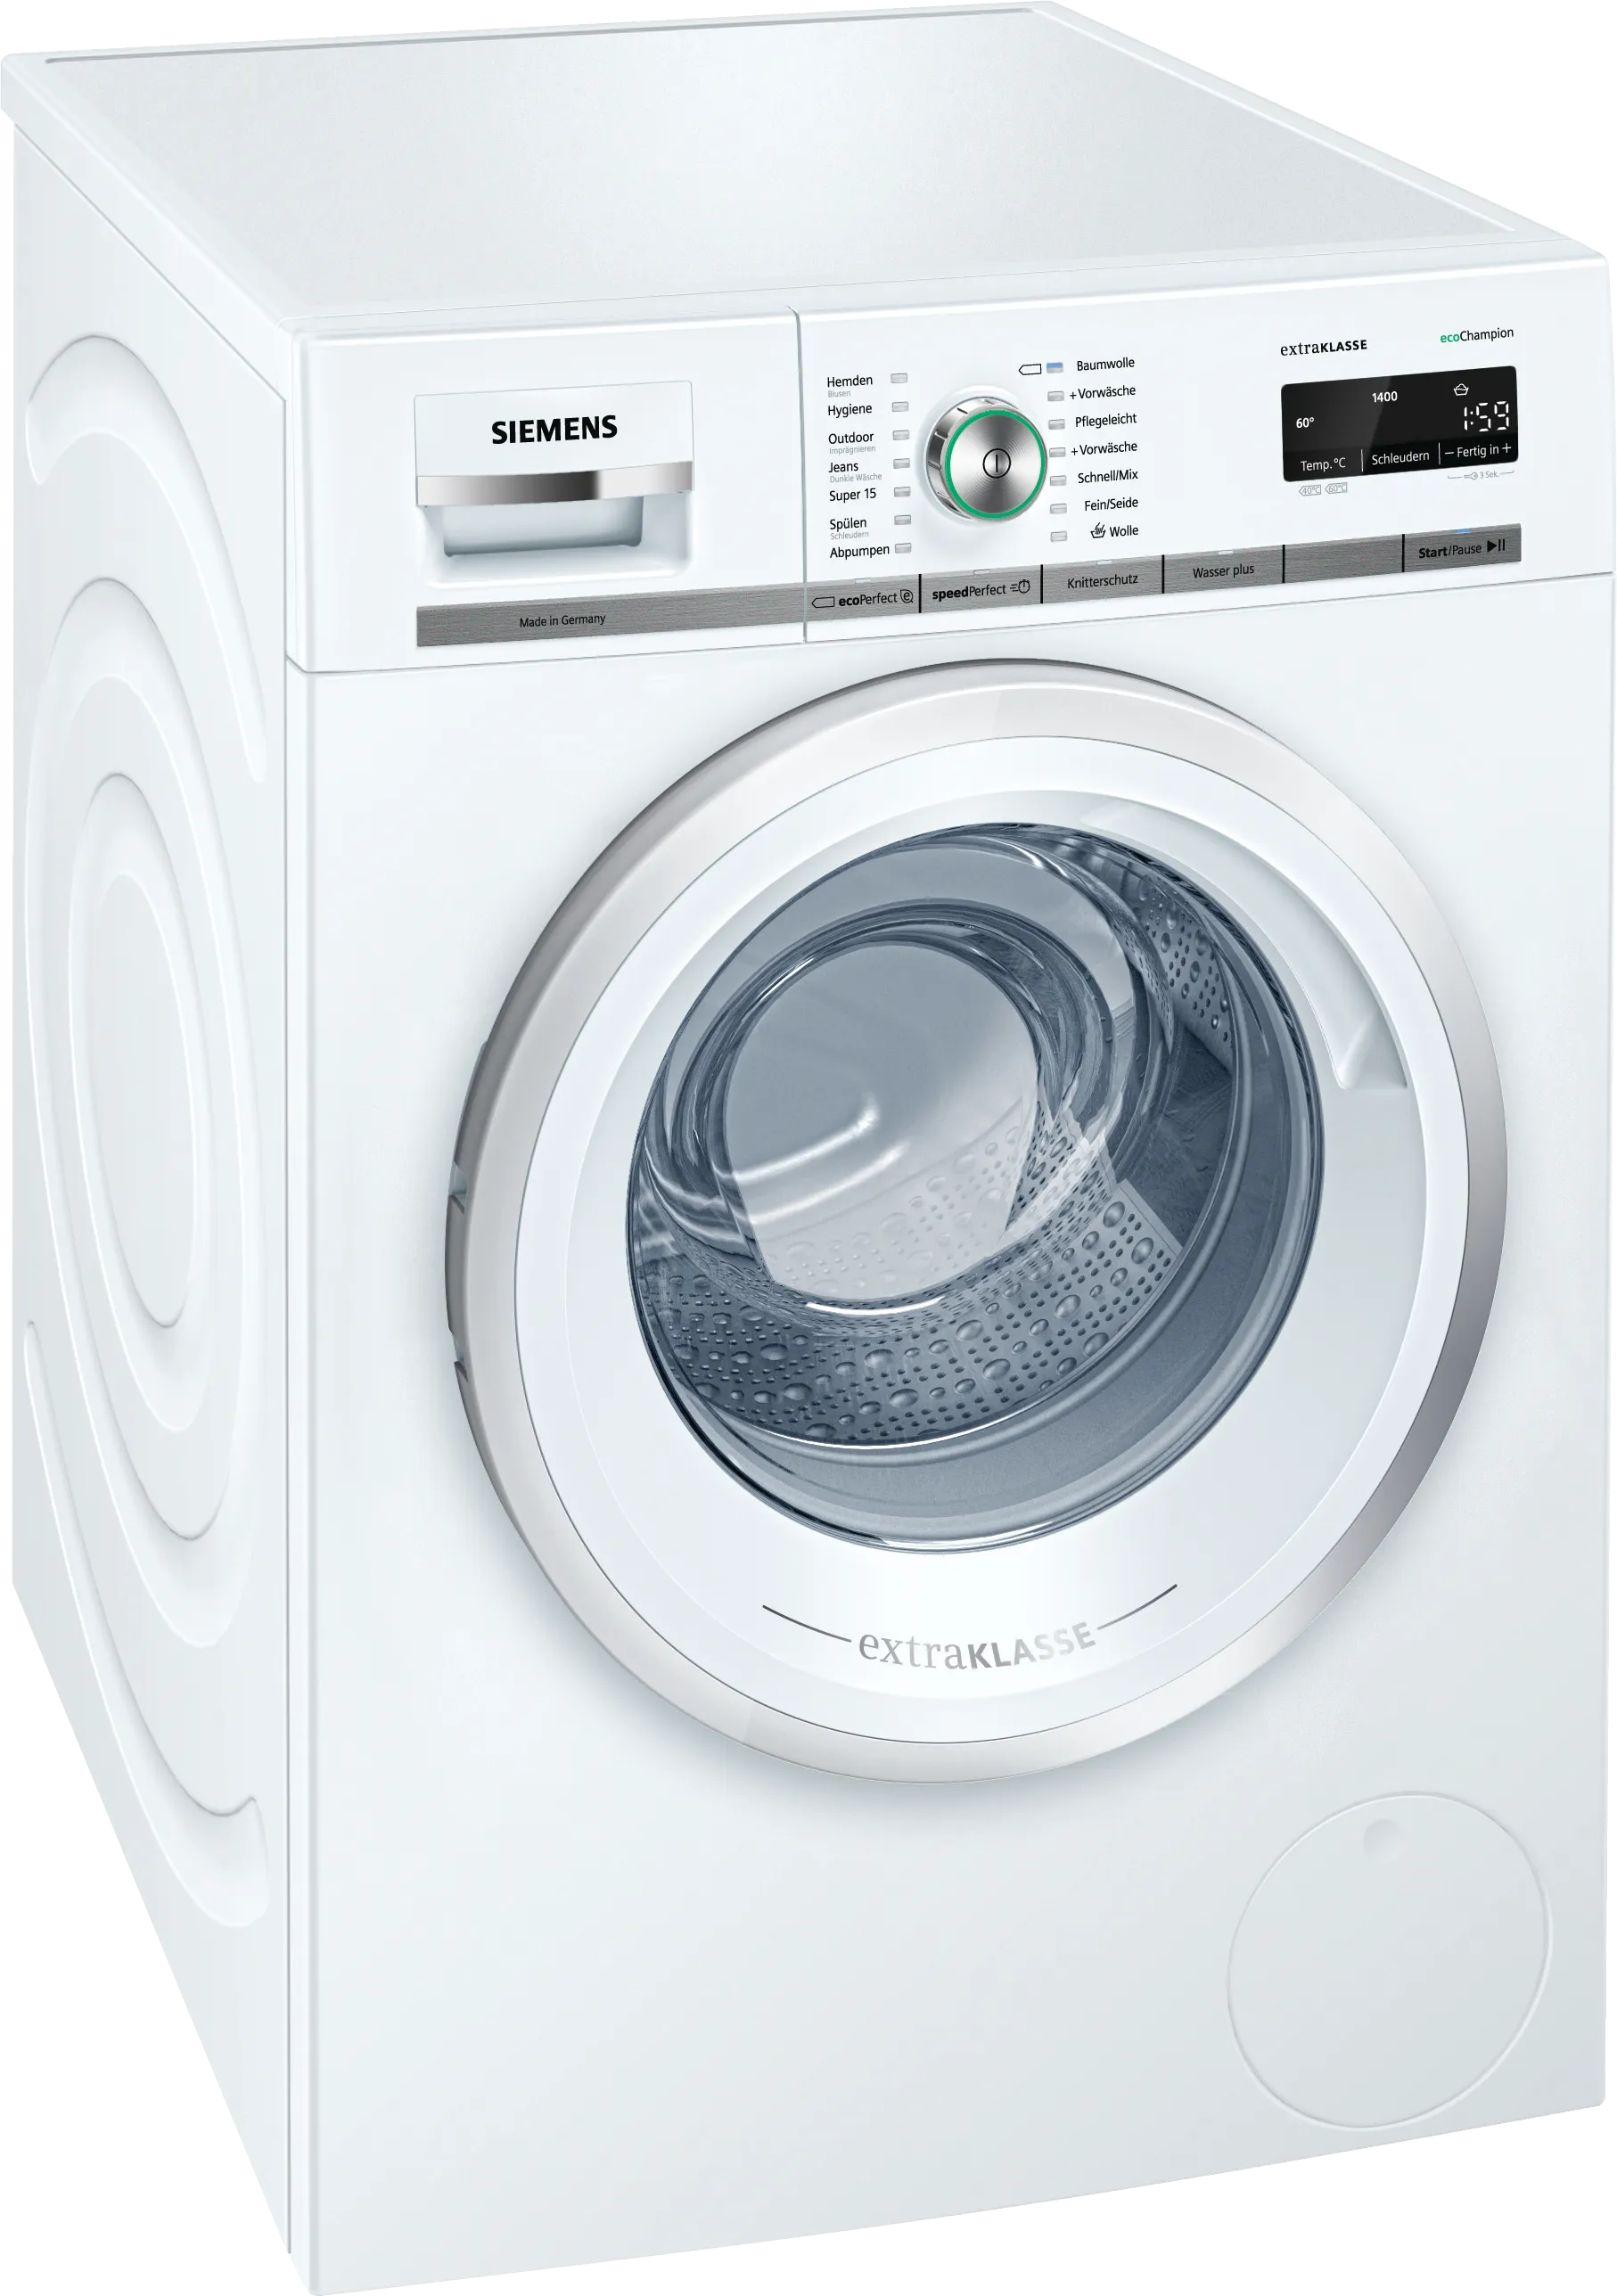 iQ700 washing machine, frontloader fullsize 8 kg 1400 rpm 